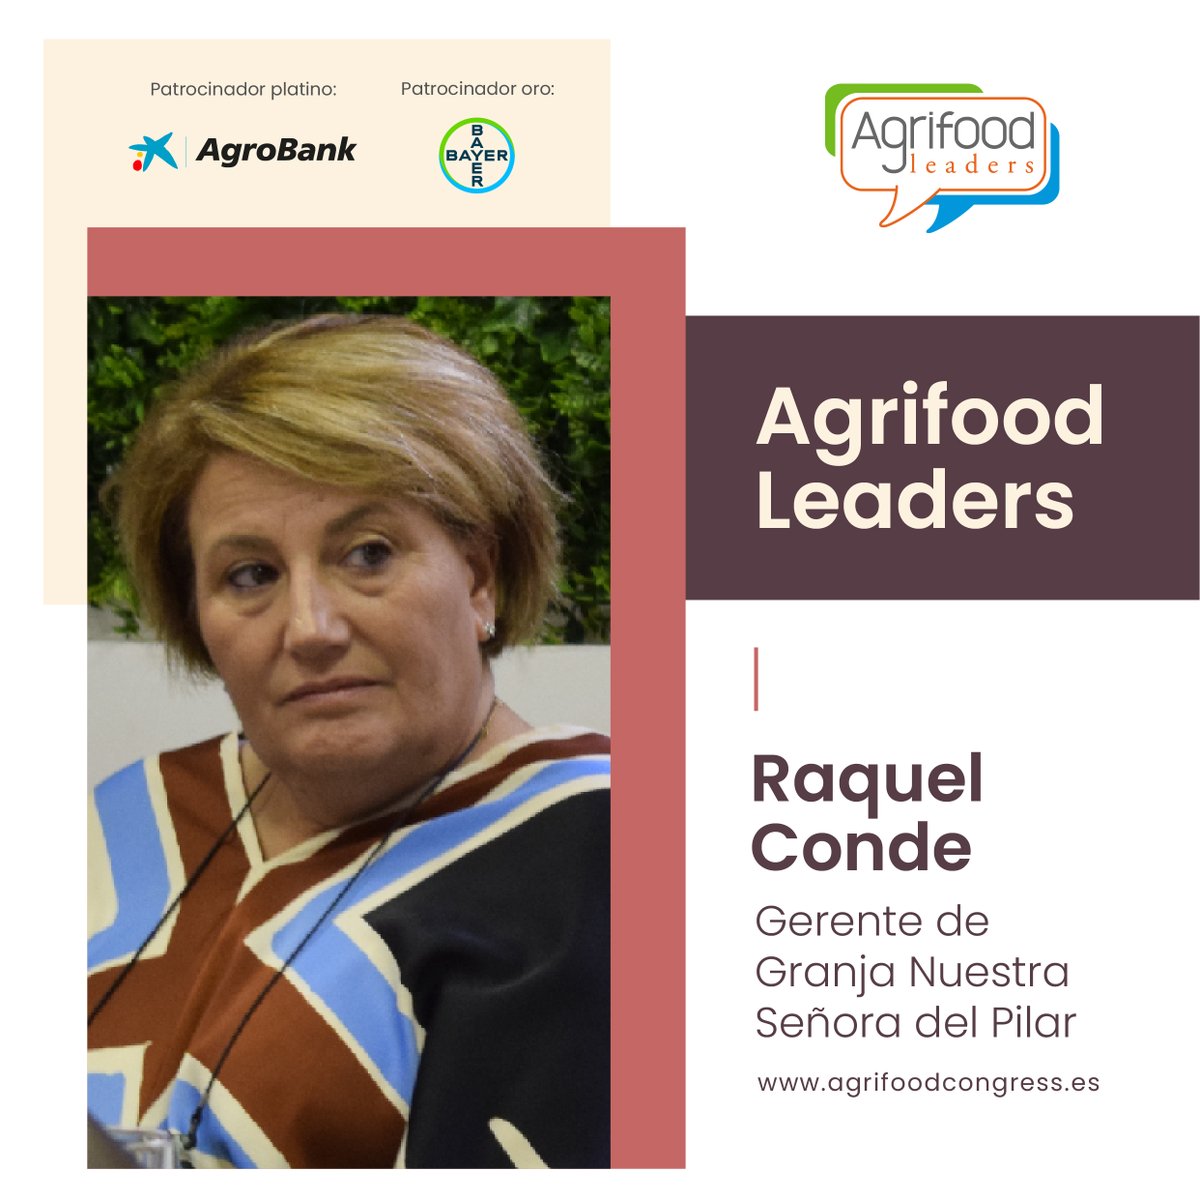 ¿Conoces a los #AgrifoodLeaders? Raquel Conde, Gerente de la Granja Nuestra Señora del Pilar, forma parte de la inciativa 🐖👩⬇️

agrifoodcongress.es/key/leaders/ra…